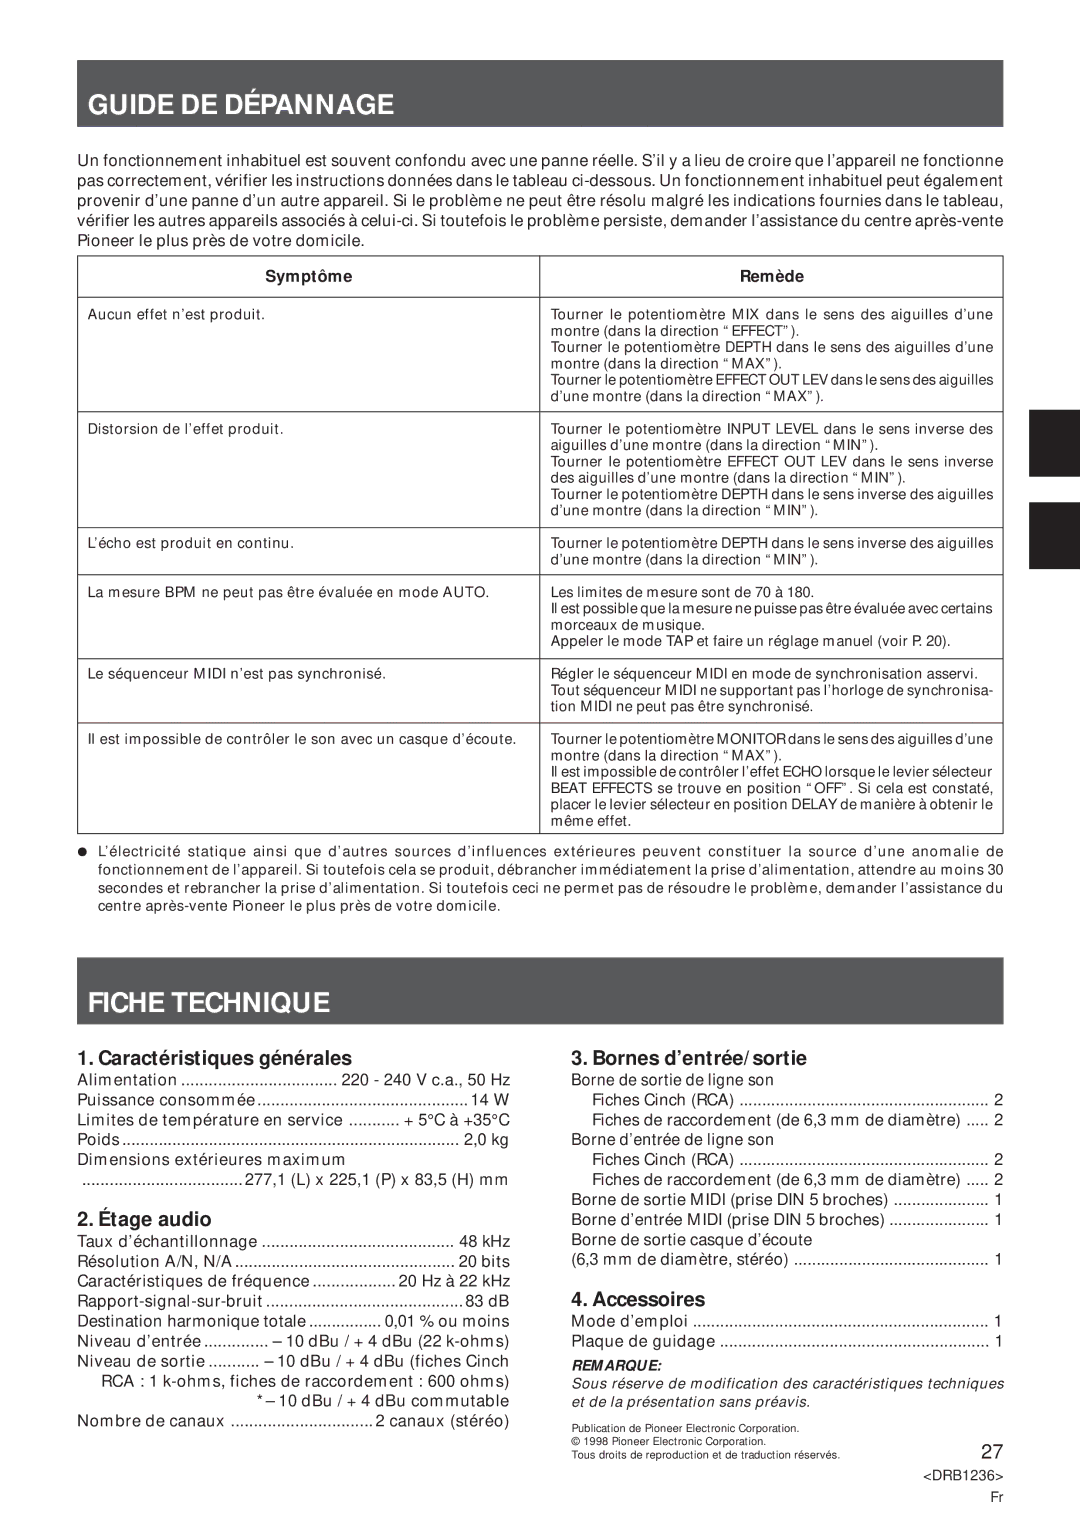 Pioneer Efx-500 operating instructions Guide DE Dépannage, Fiche Technique 